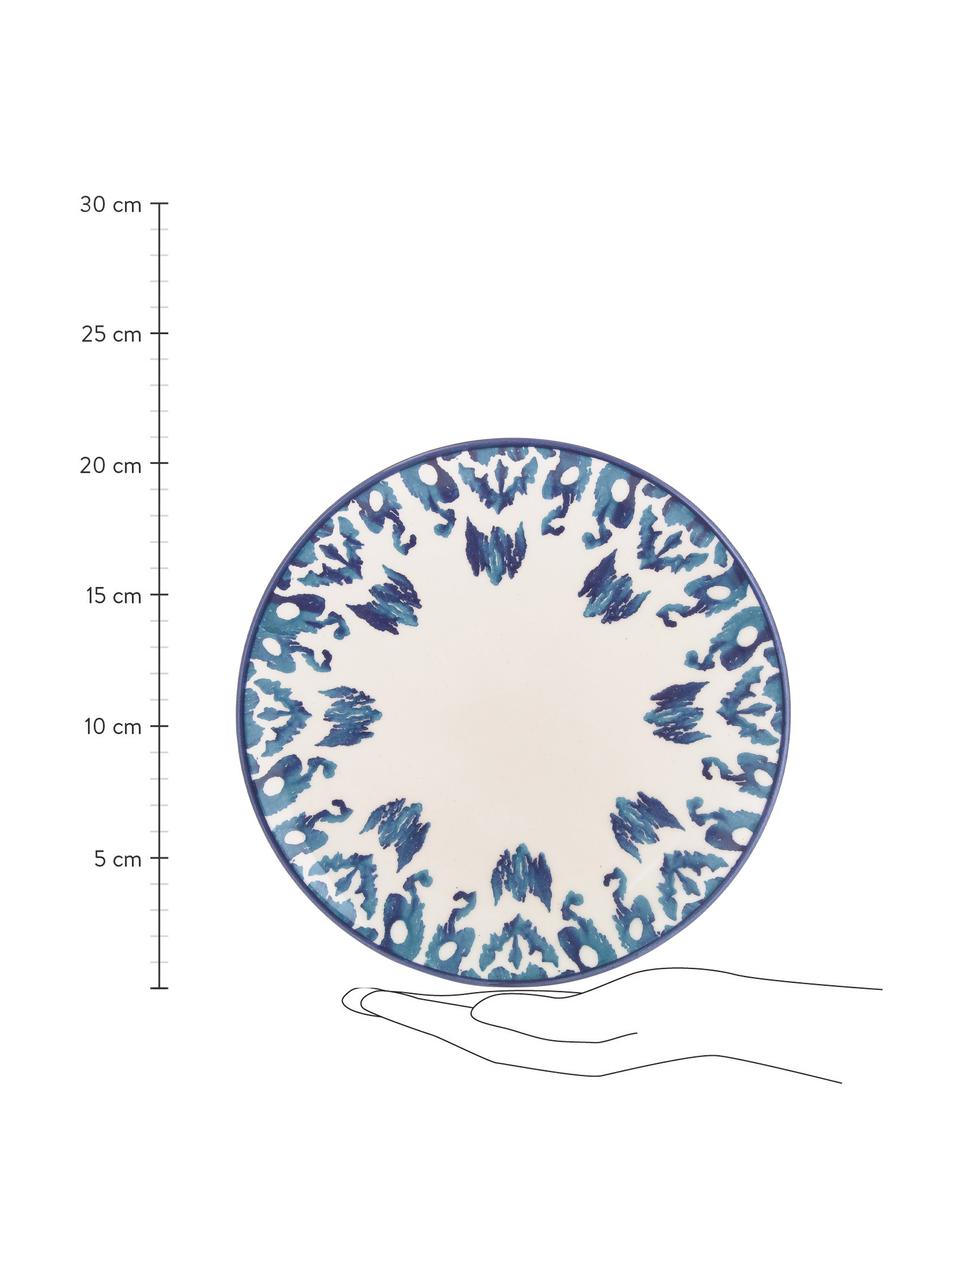 Ręcznie wykonany talerz śniadaniowy Ikat, 6 szt., Ceramika, Biały, niebieski, Ø 21 cm